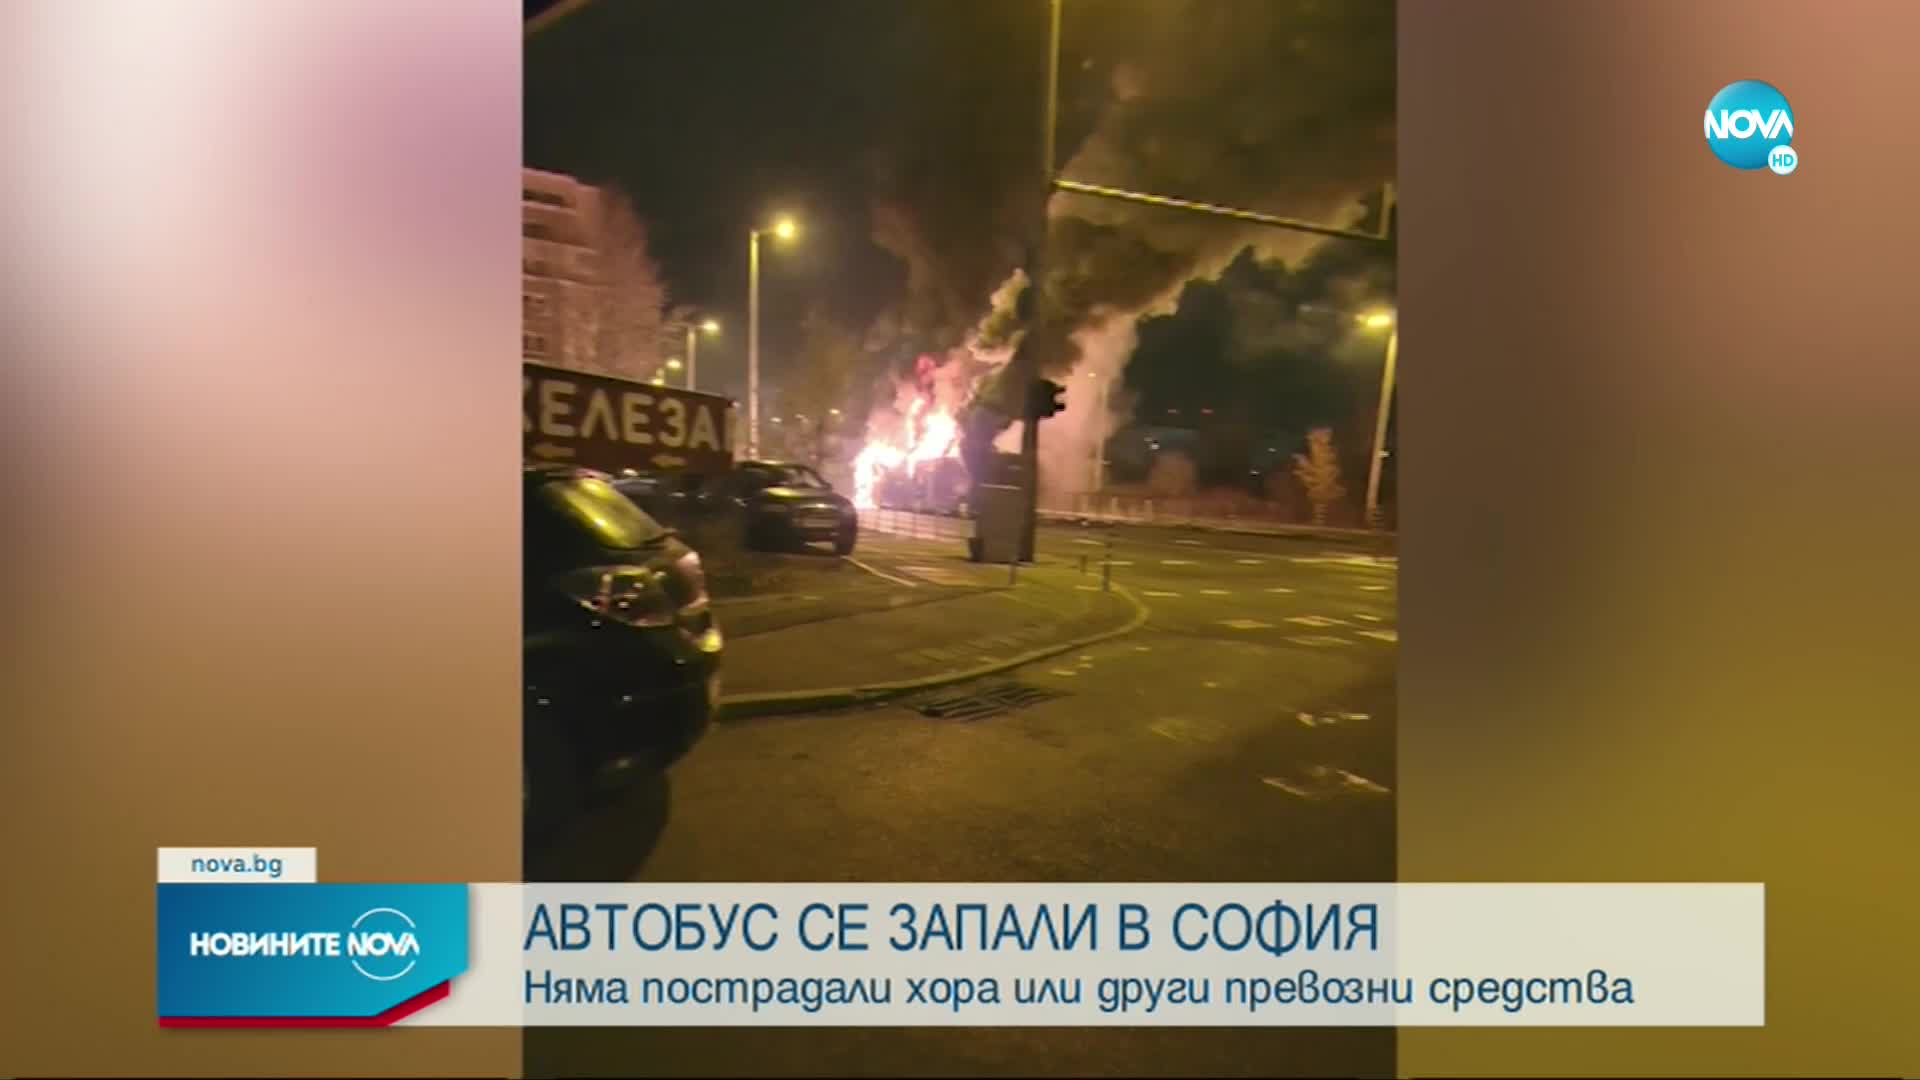 Автобус на градския транспорт в София се запали в движение